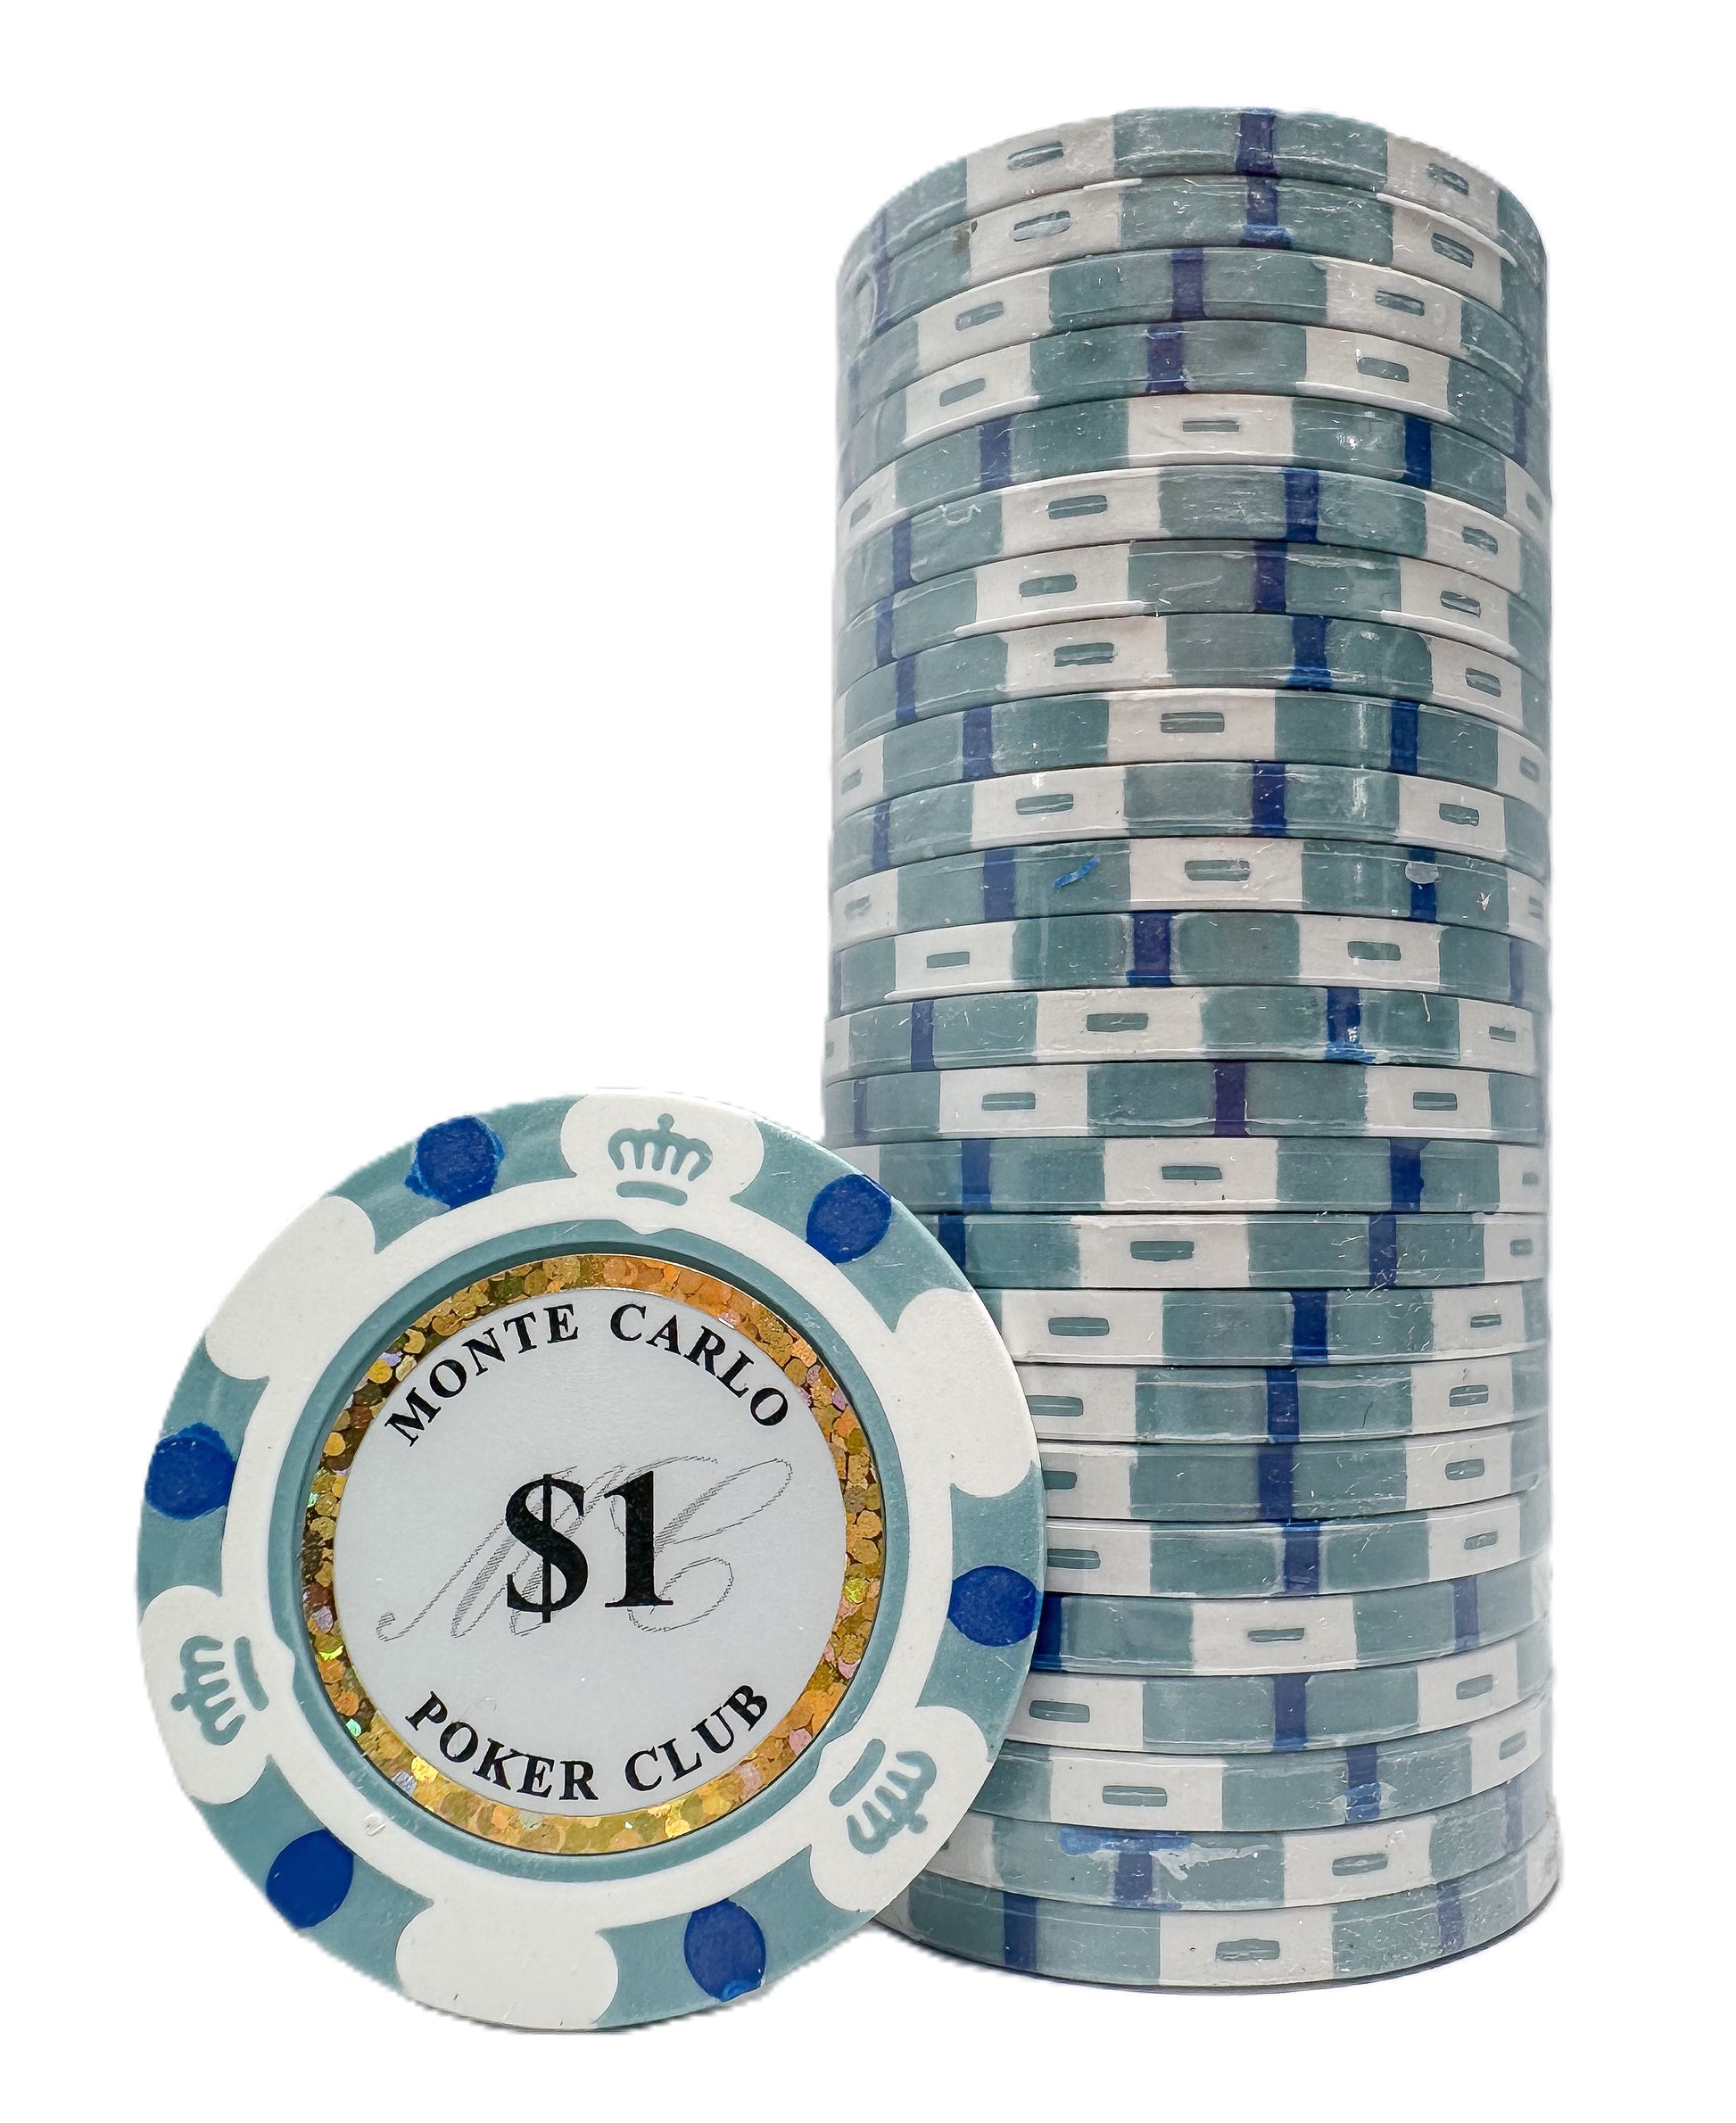 Monte Carlo $1 chip